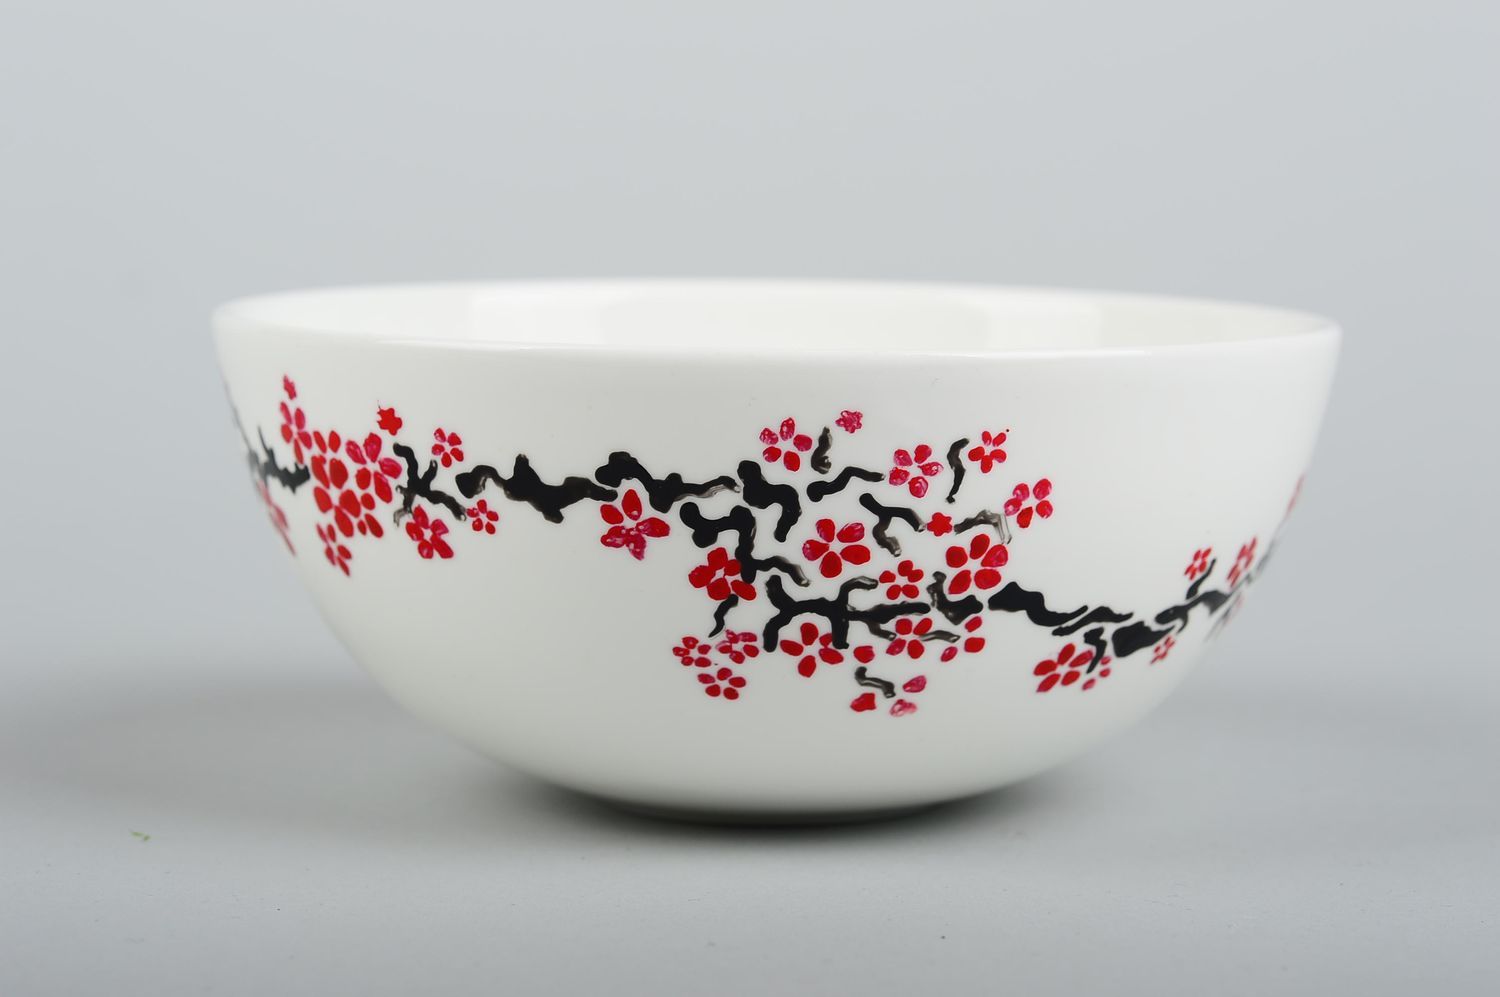 Глубокая керамическая тарелка ручной работы глиняная посуда тарелка для салата фото 3